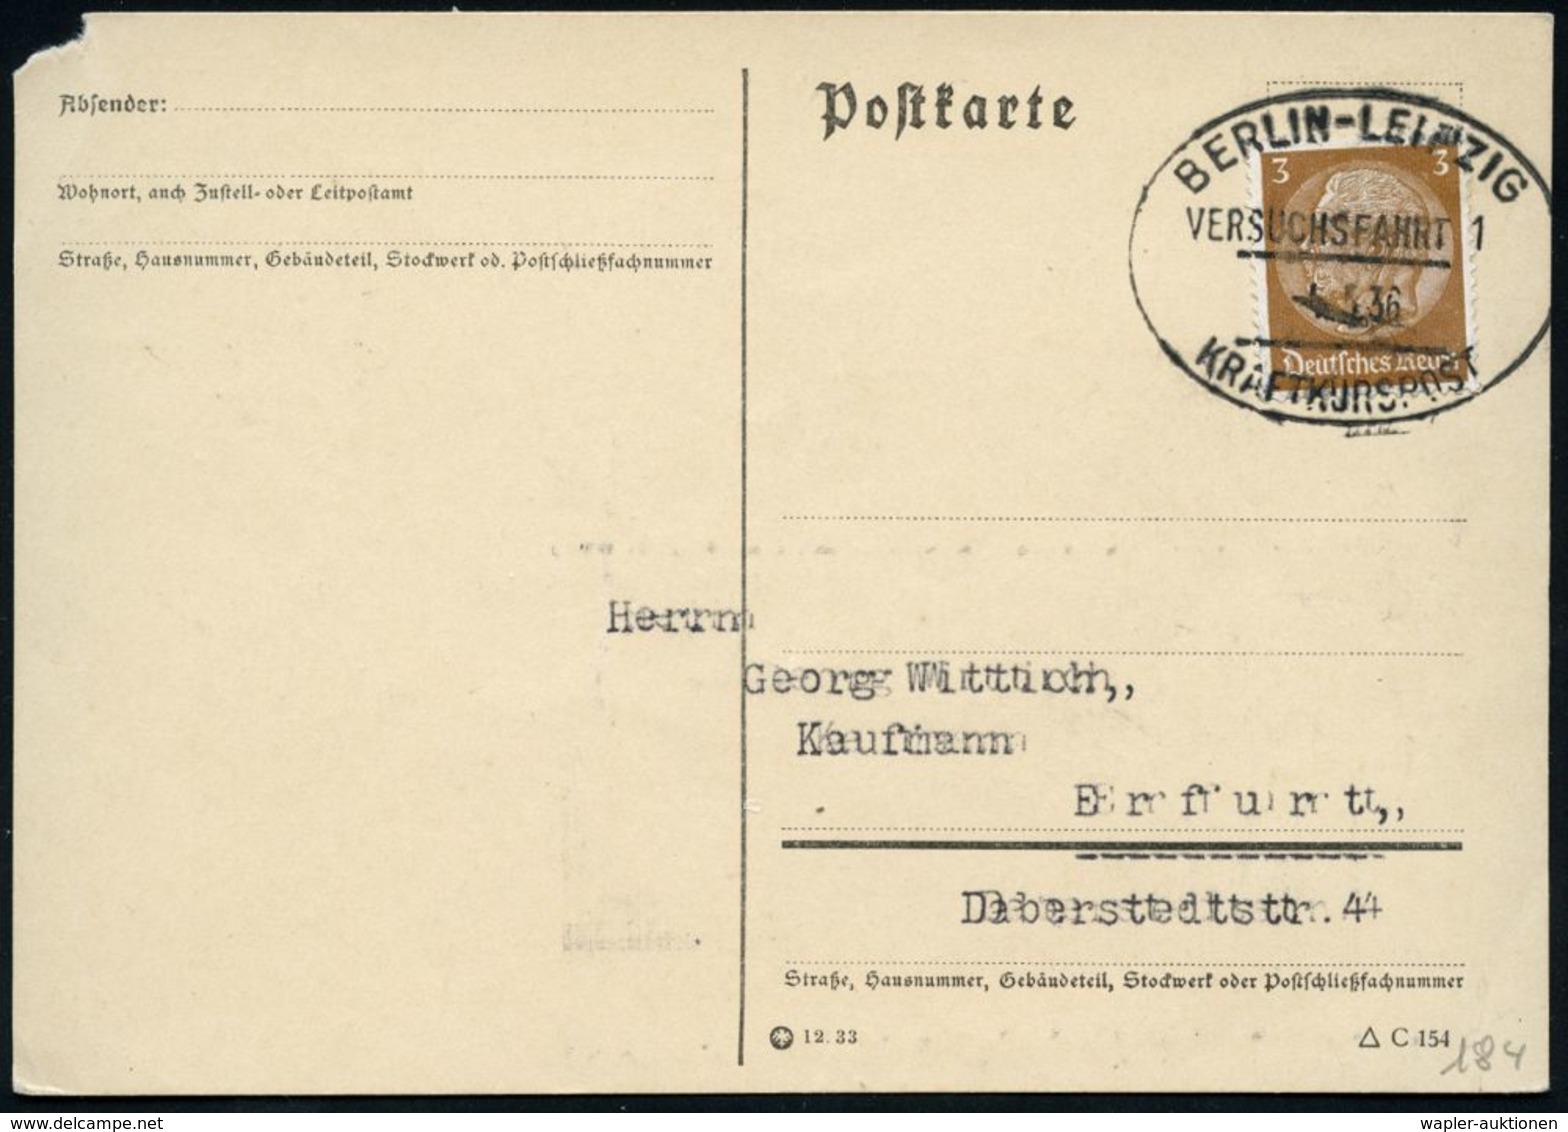 BERLIN-LEIPZIG/ VERSUCHSFAHRT 1/ KRAFTKURSPOST 1936 (5.5.) Seltener Oval-St Von Der Eröffnungsfahrt! , Inl.-Karte + Kopi - Automobili